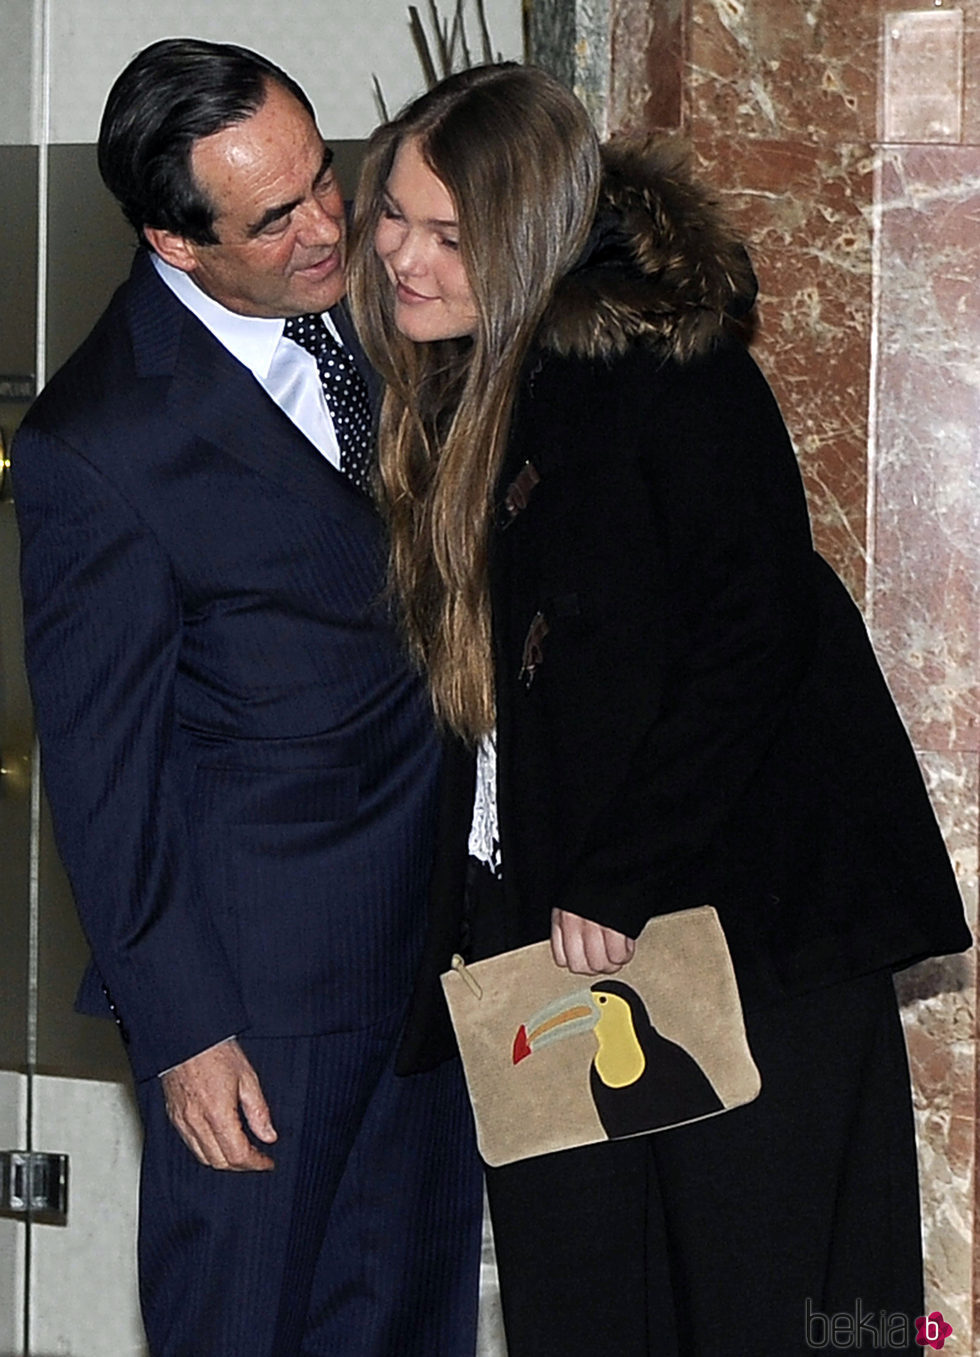 Sofía Bono con su padre José Bono en la presentación de su libro